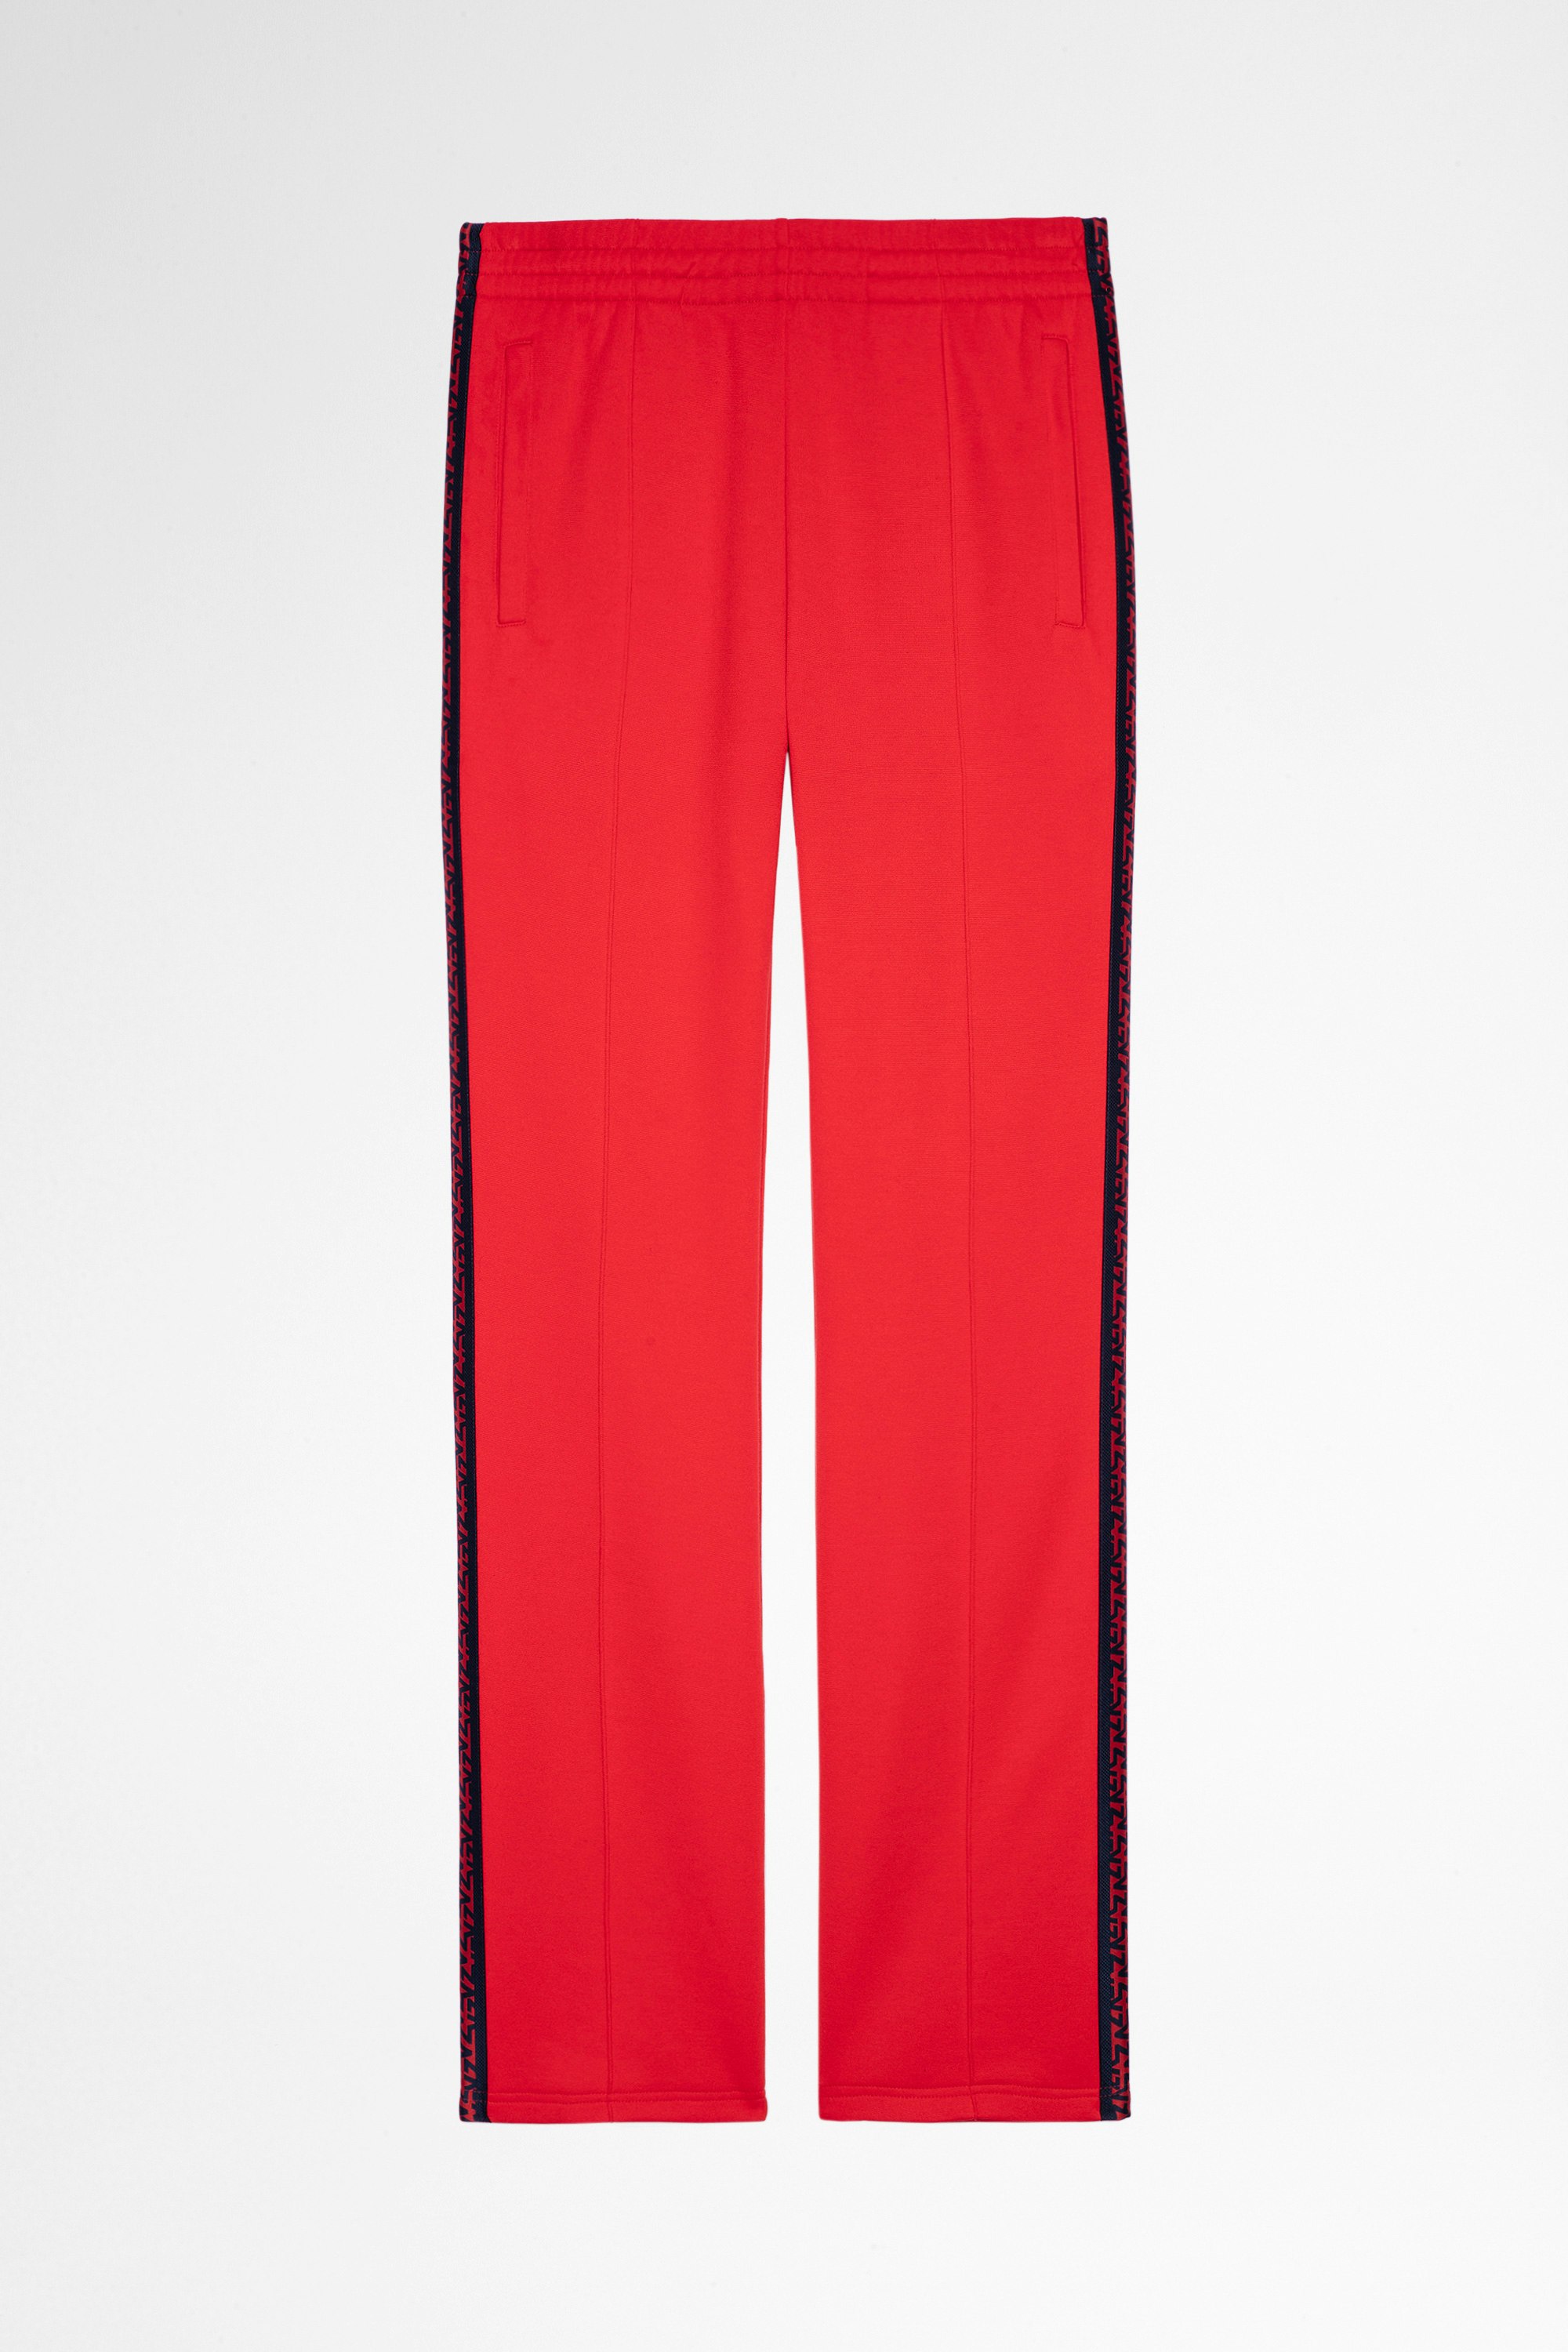 Pantalon Chillyn Pantalon flare rouge à bandes latérales Homme. Fait avec des fibres issues de l’agriculture biologique